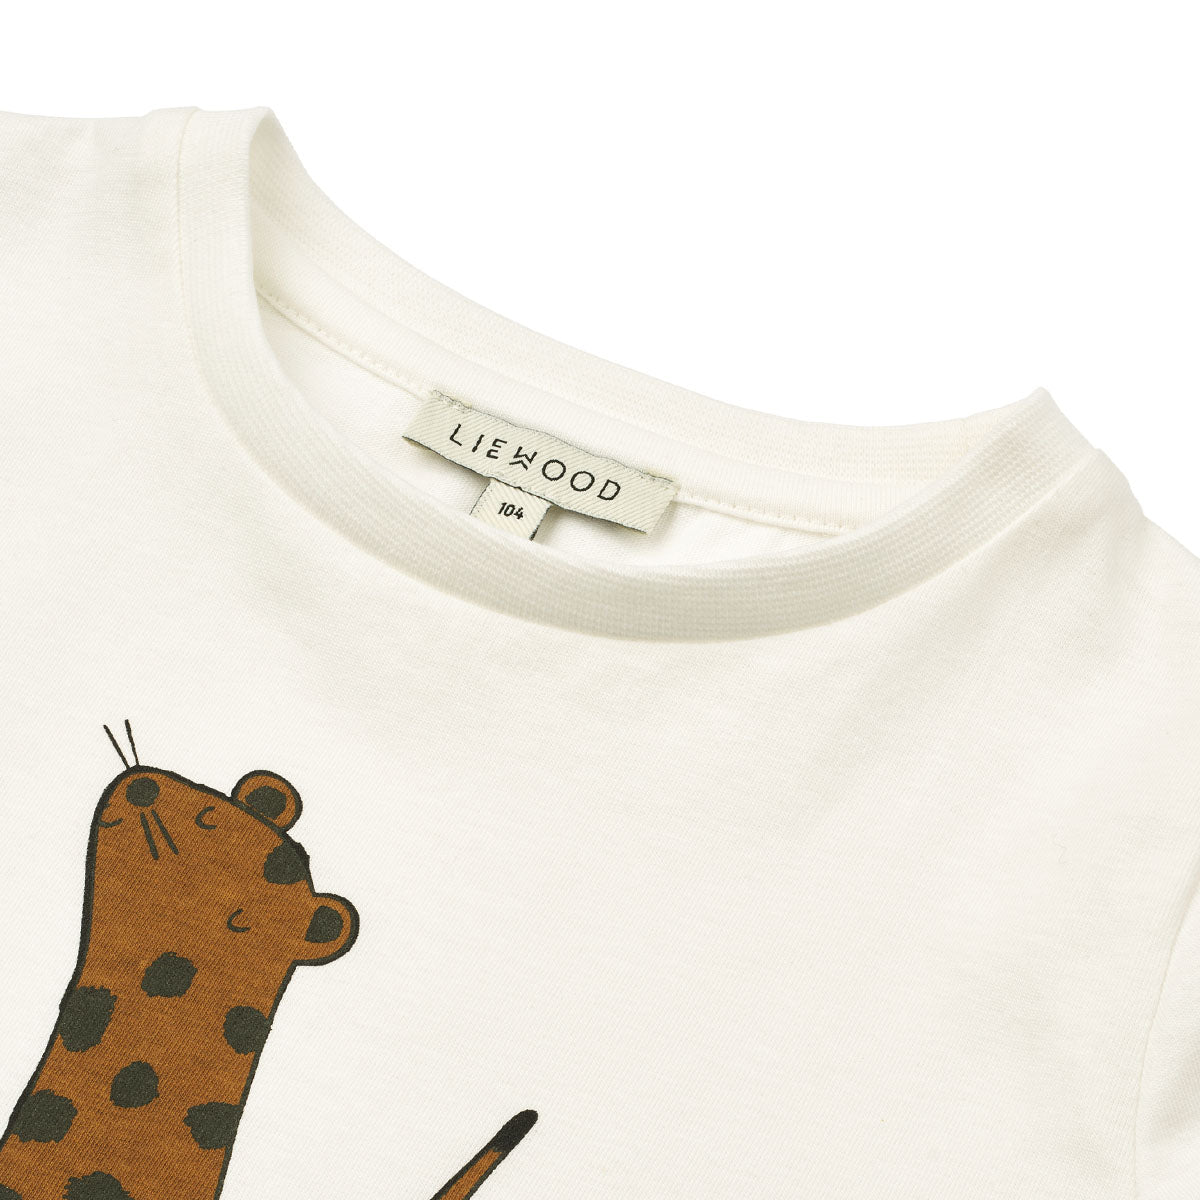 Verrijk de garderobe van je kind met dit schattige apia T-shirt in de kleur leopard/crisp white van het merk Liewood. Dit stijlvolle shirtje ziet er niet alleen geweldig uit, maar zit ook heel erg comfortabel! VanZus